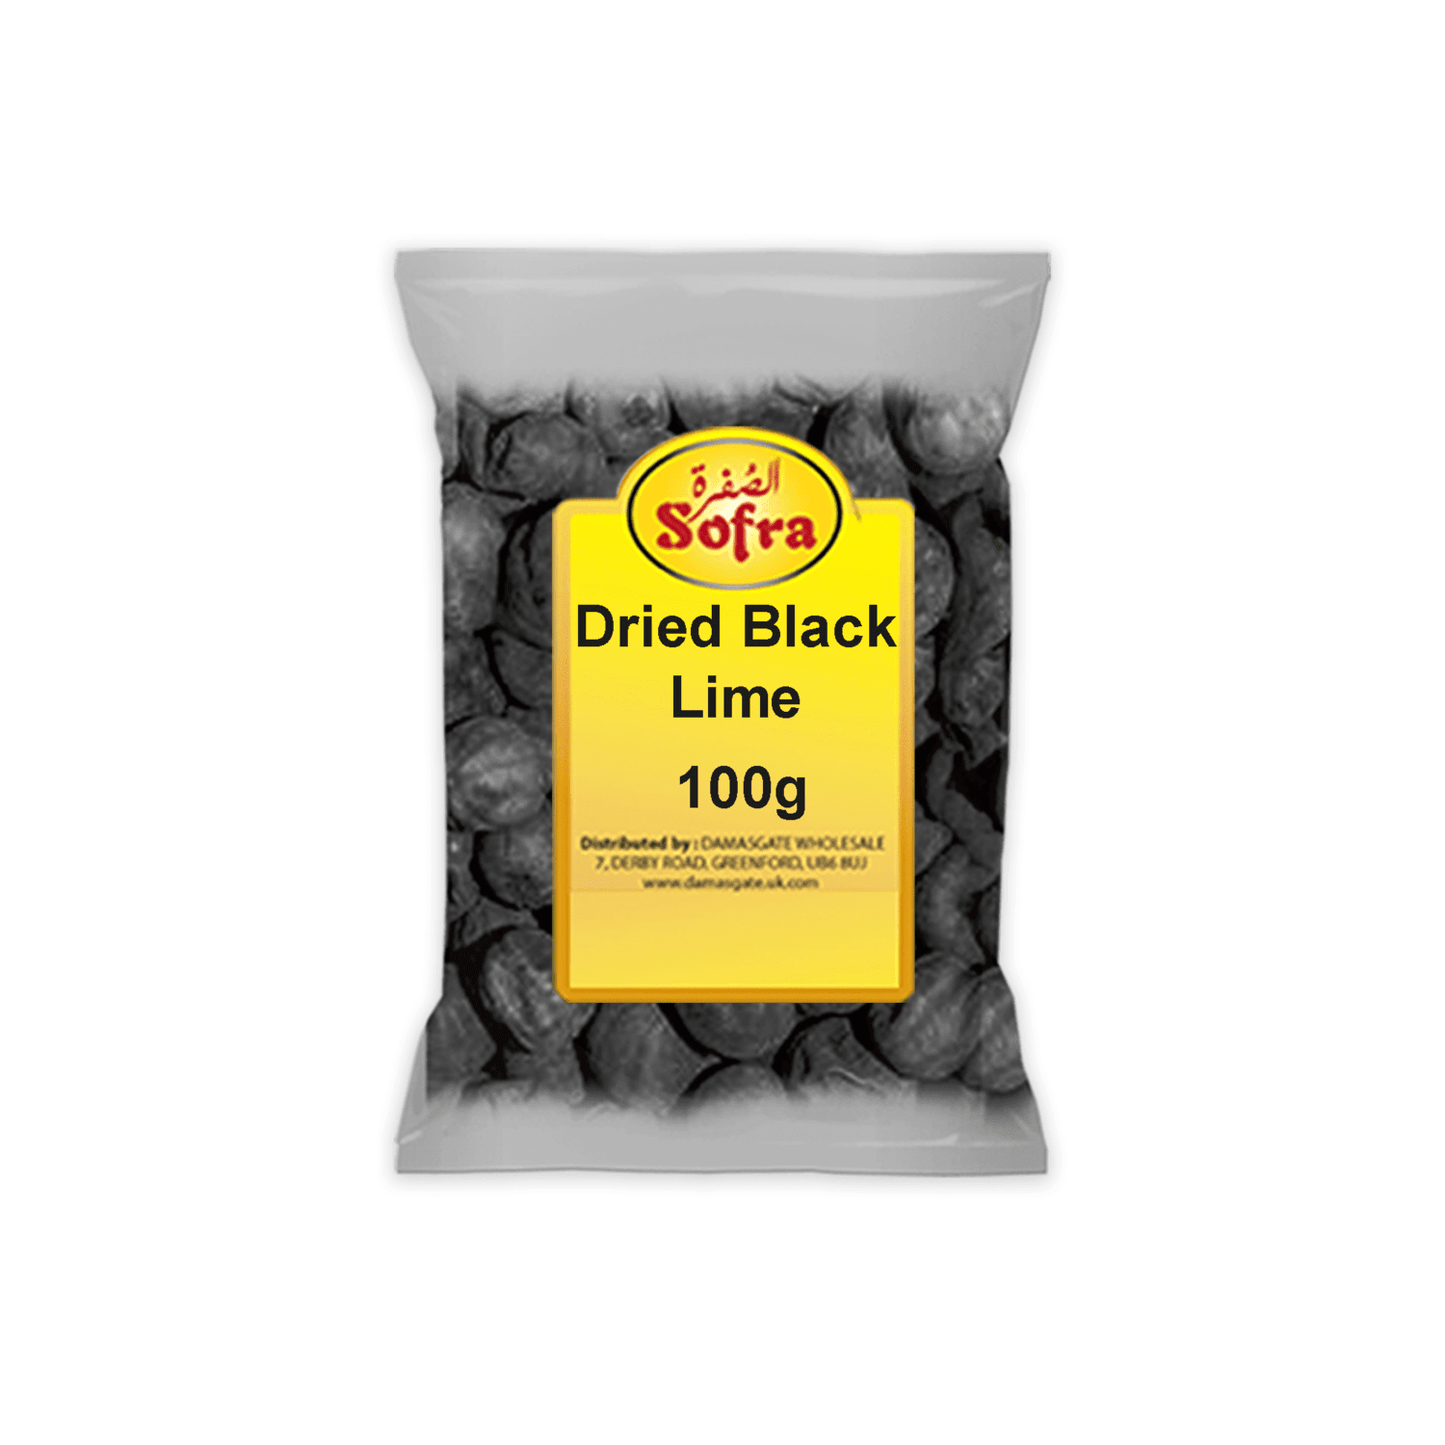 Sofra Dried Black Lime 100g